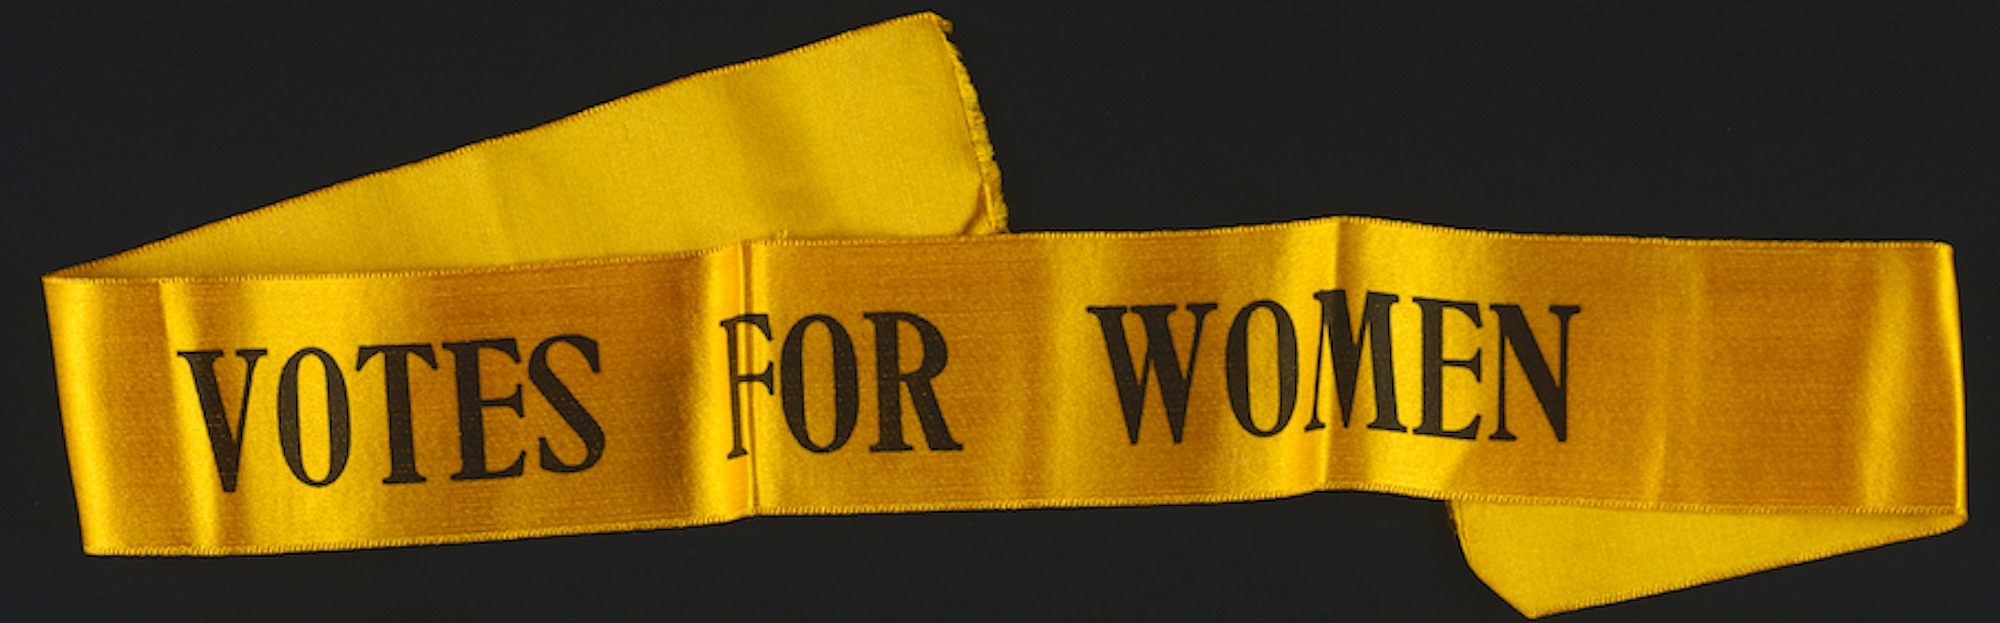 Votes For Women Banner